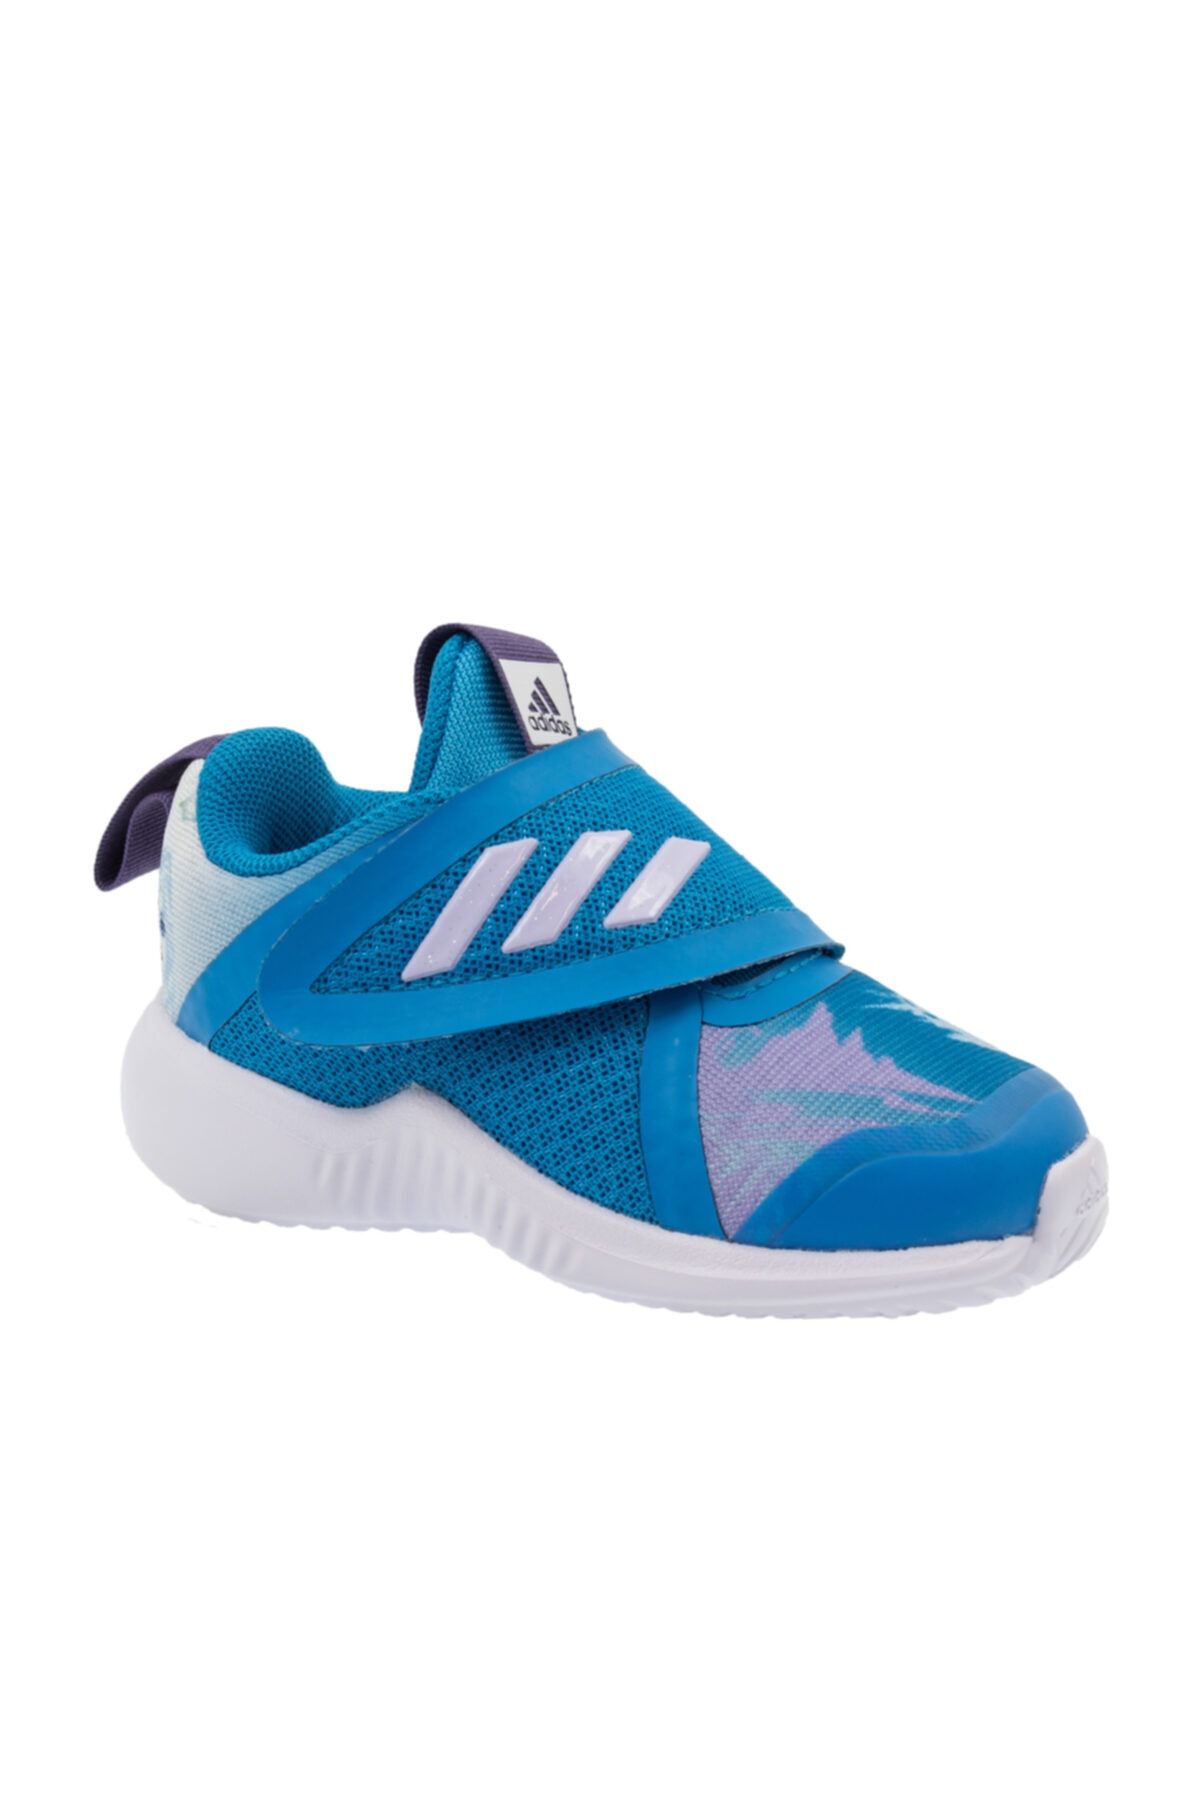 adidas Fortarun X Frozen Bebek Mavi Spor Ayakkabı (EF9747)